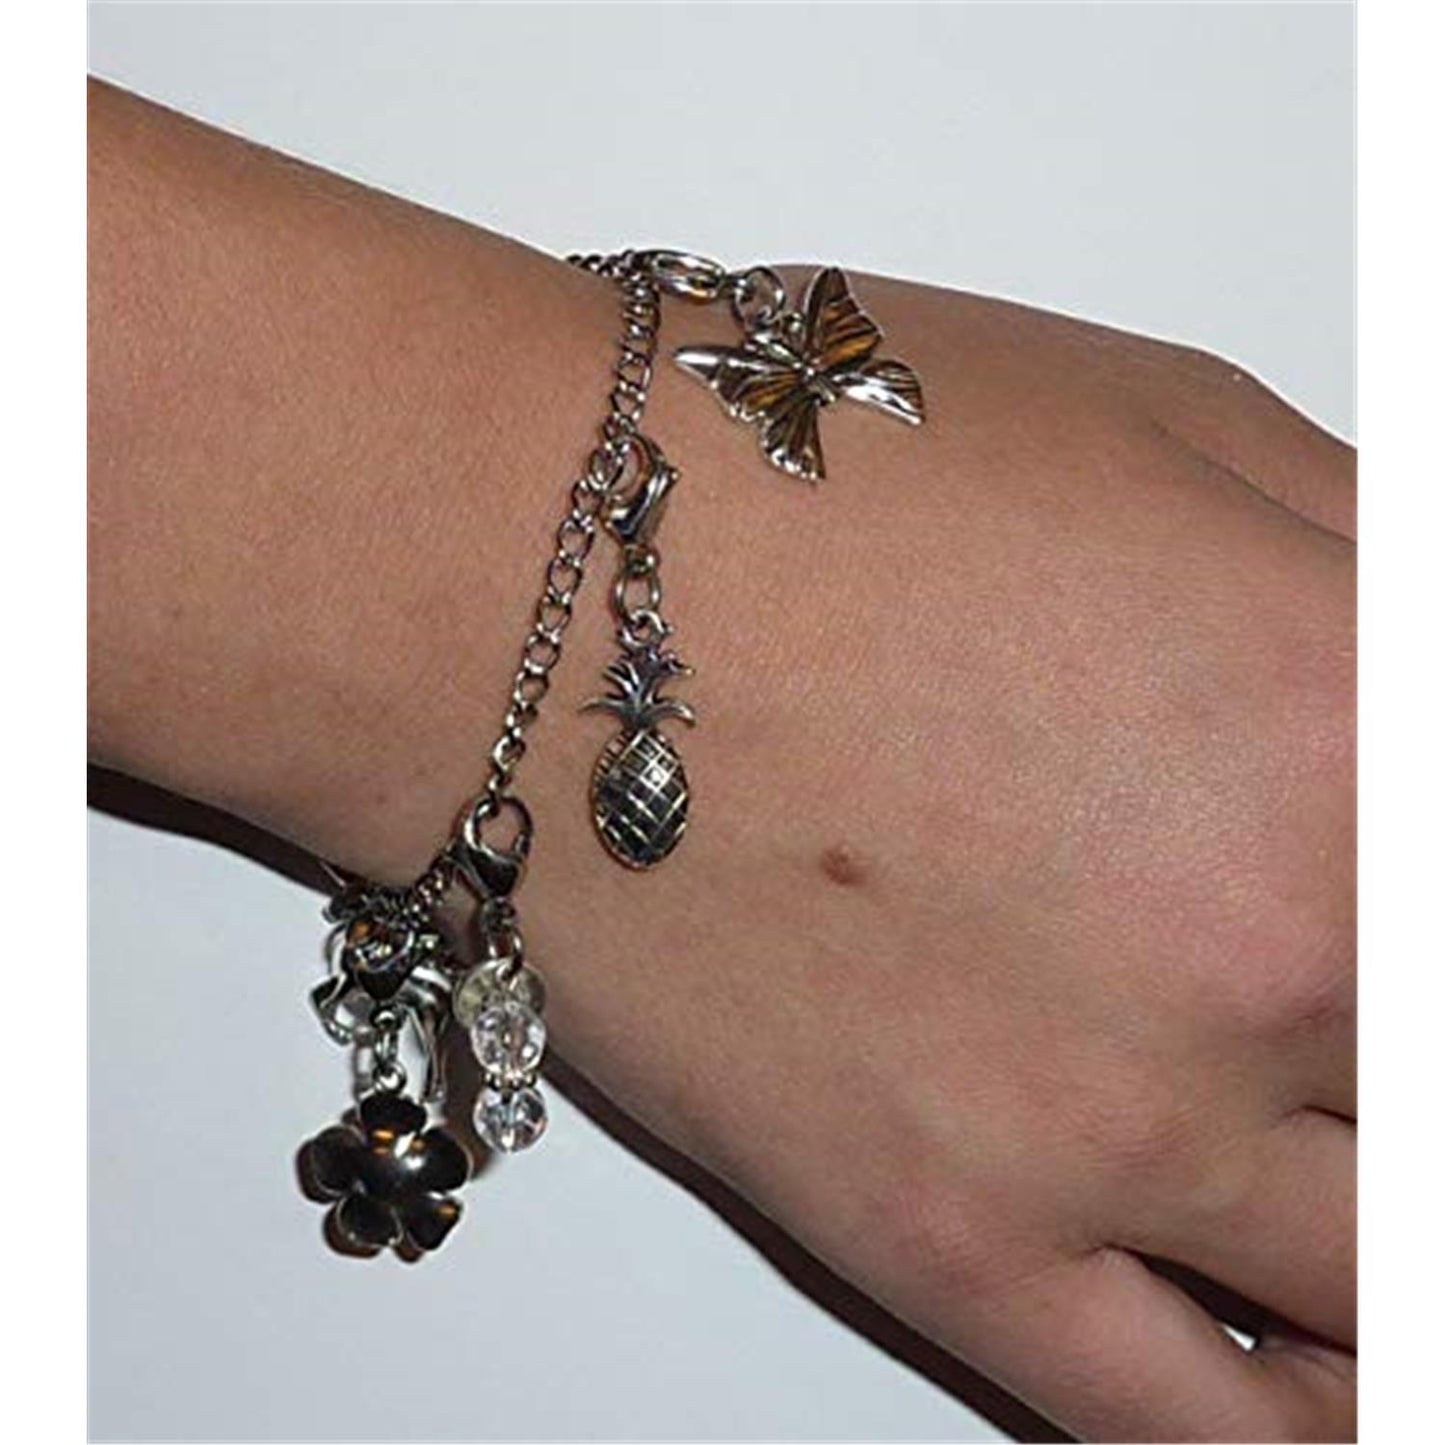 Butterfly & Flower - Custom Charm Bracelet Set